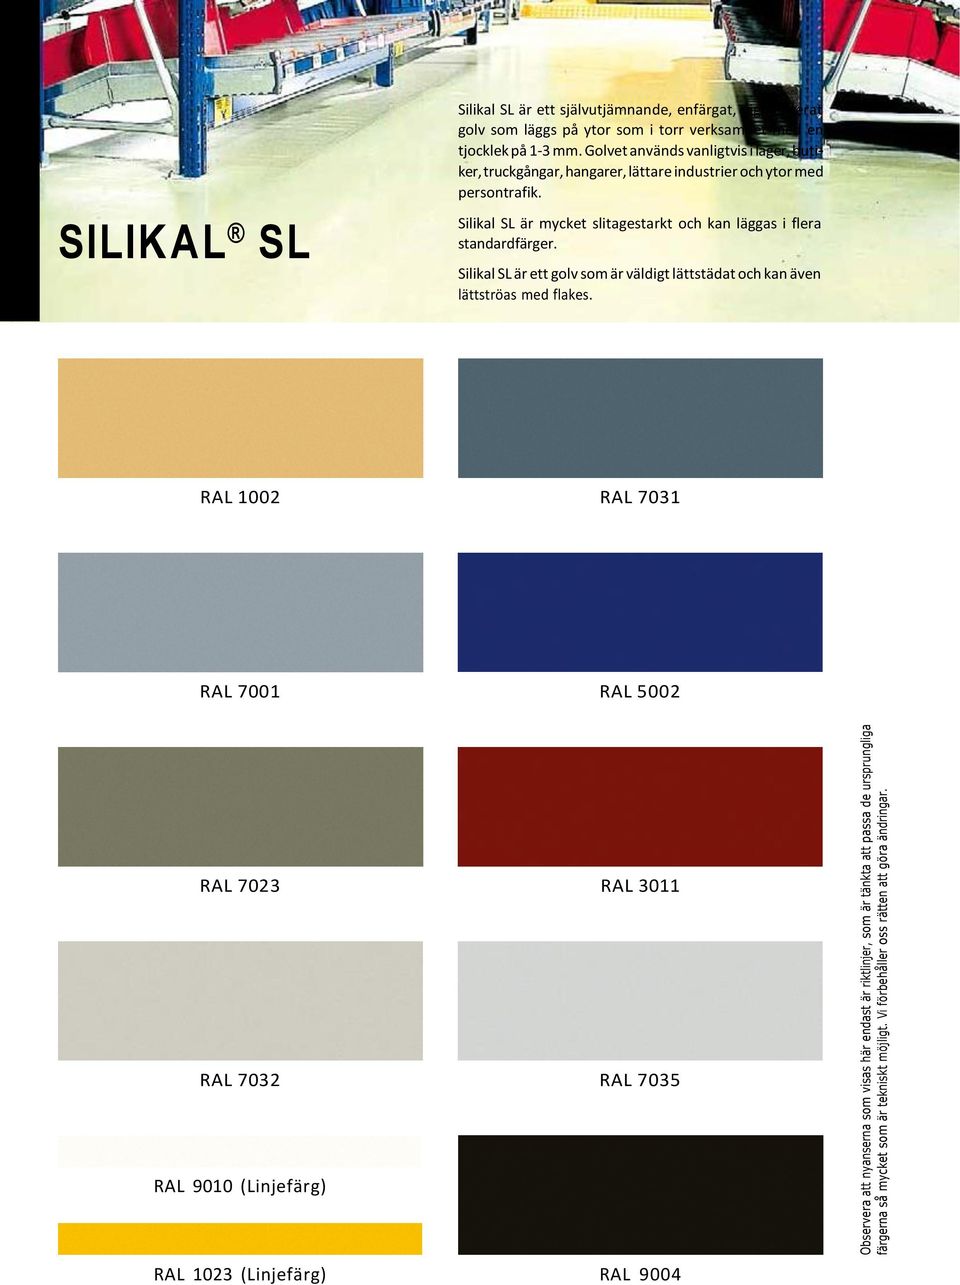 Silikal SL är mycket slitagestarkt och kan läggas i flera standardfärger. Silikal SL är ett golv som är väldigt lättstädat och kan även lättströas med flakes.